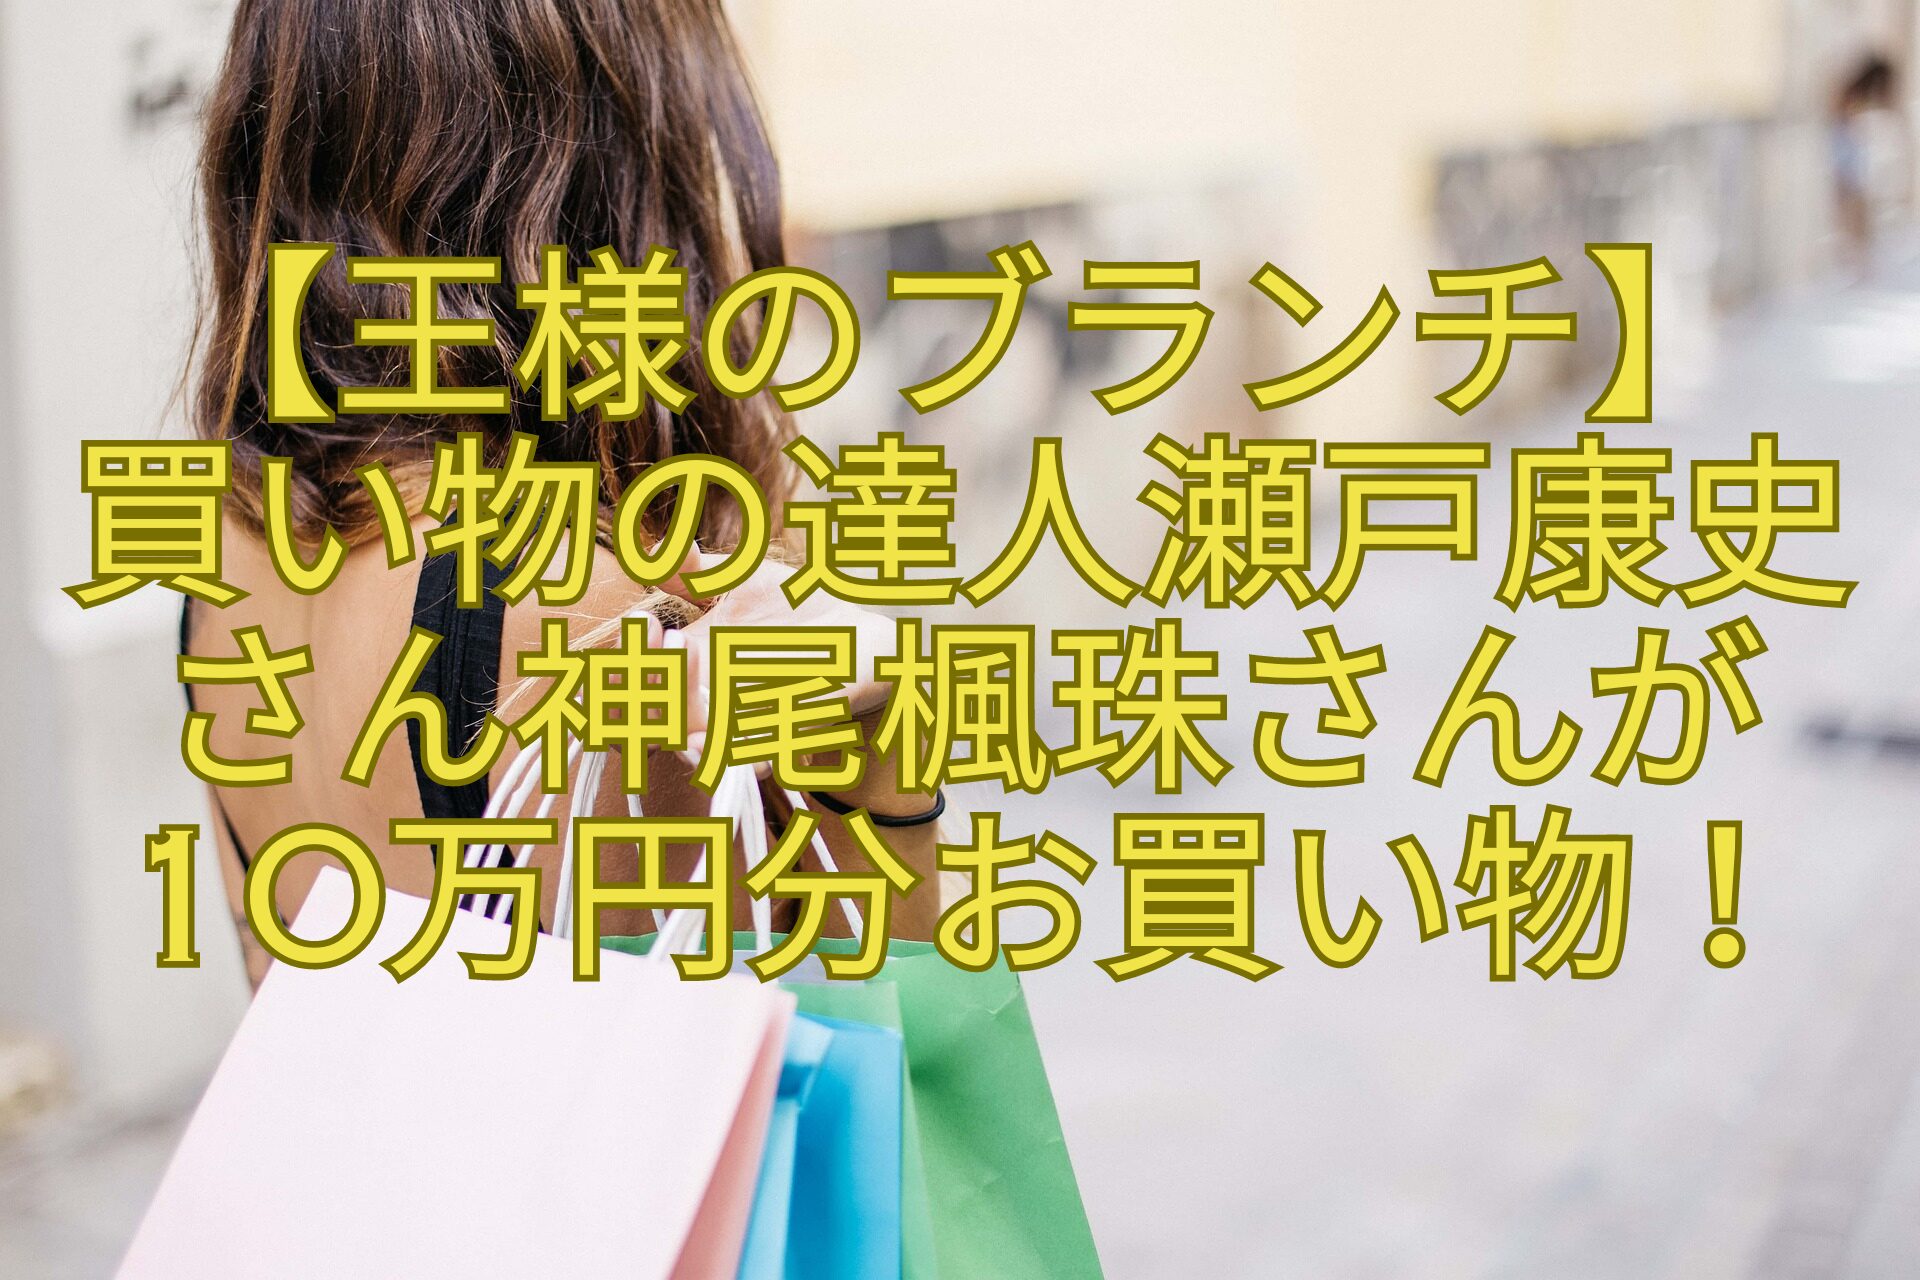 【王様のブランチ】買い物の達人瀬戸康史さん神尾楓珠さんが10万円分お買い物